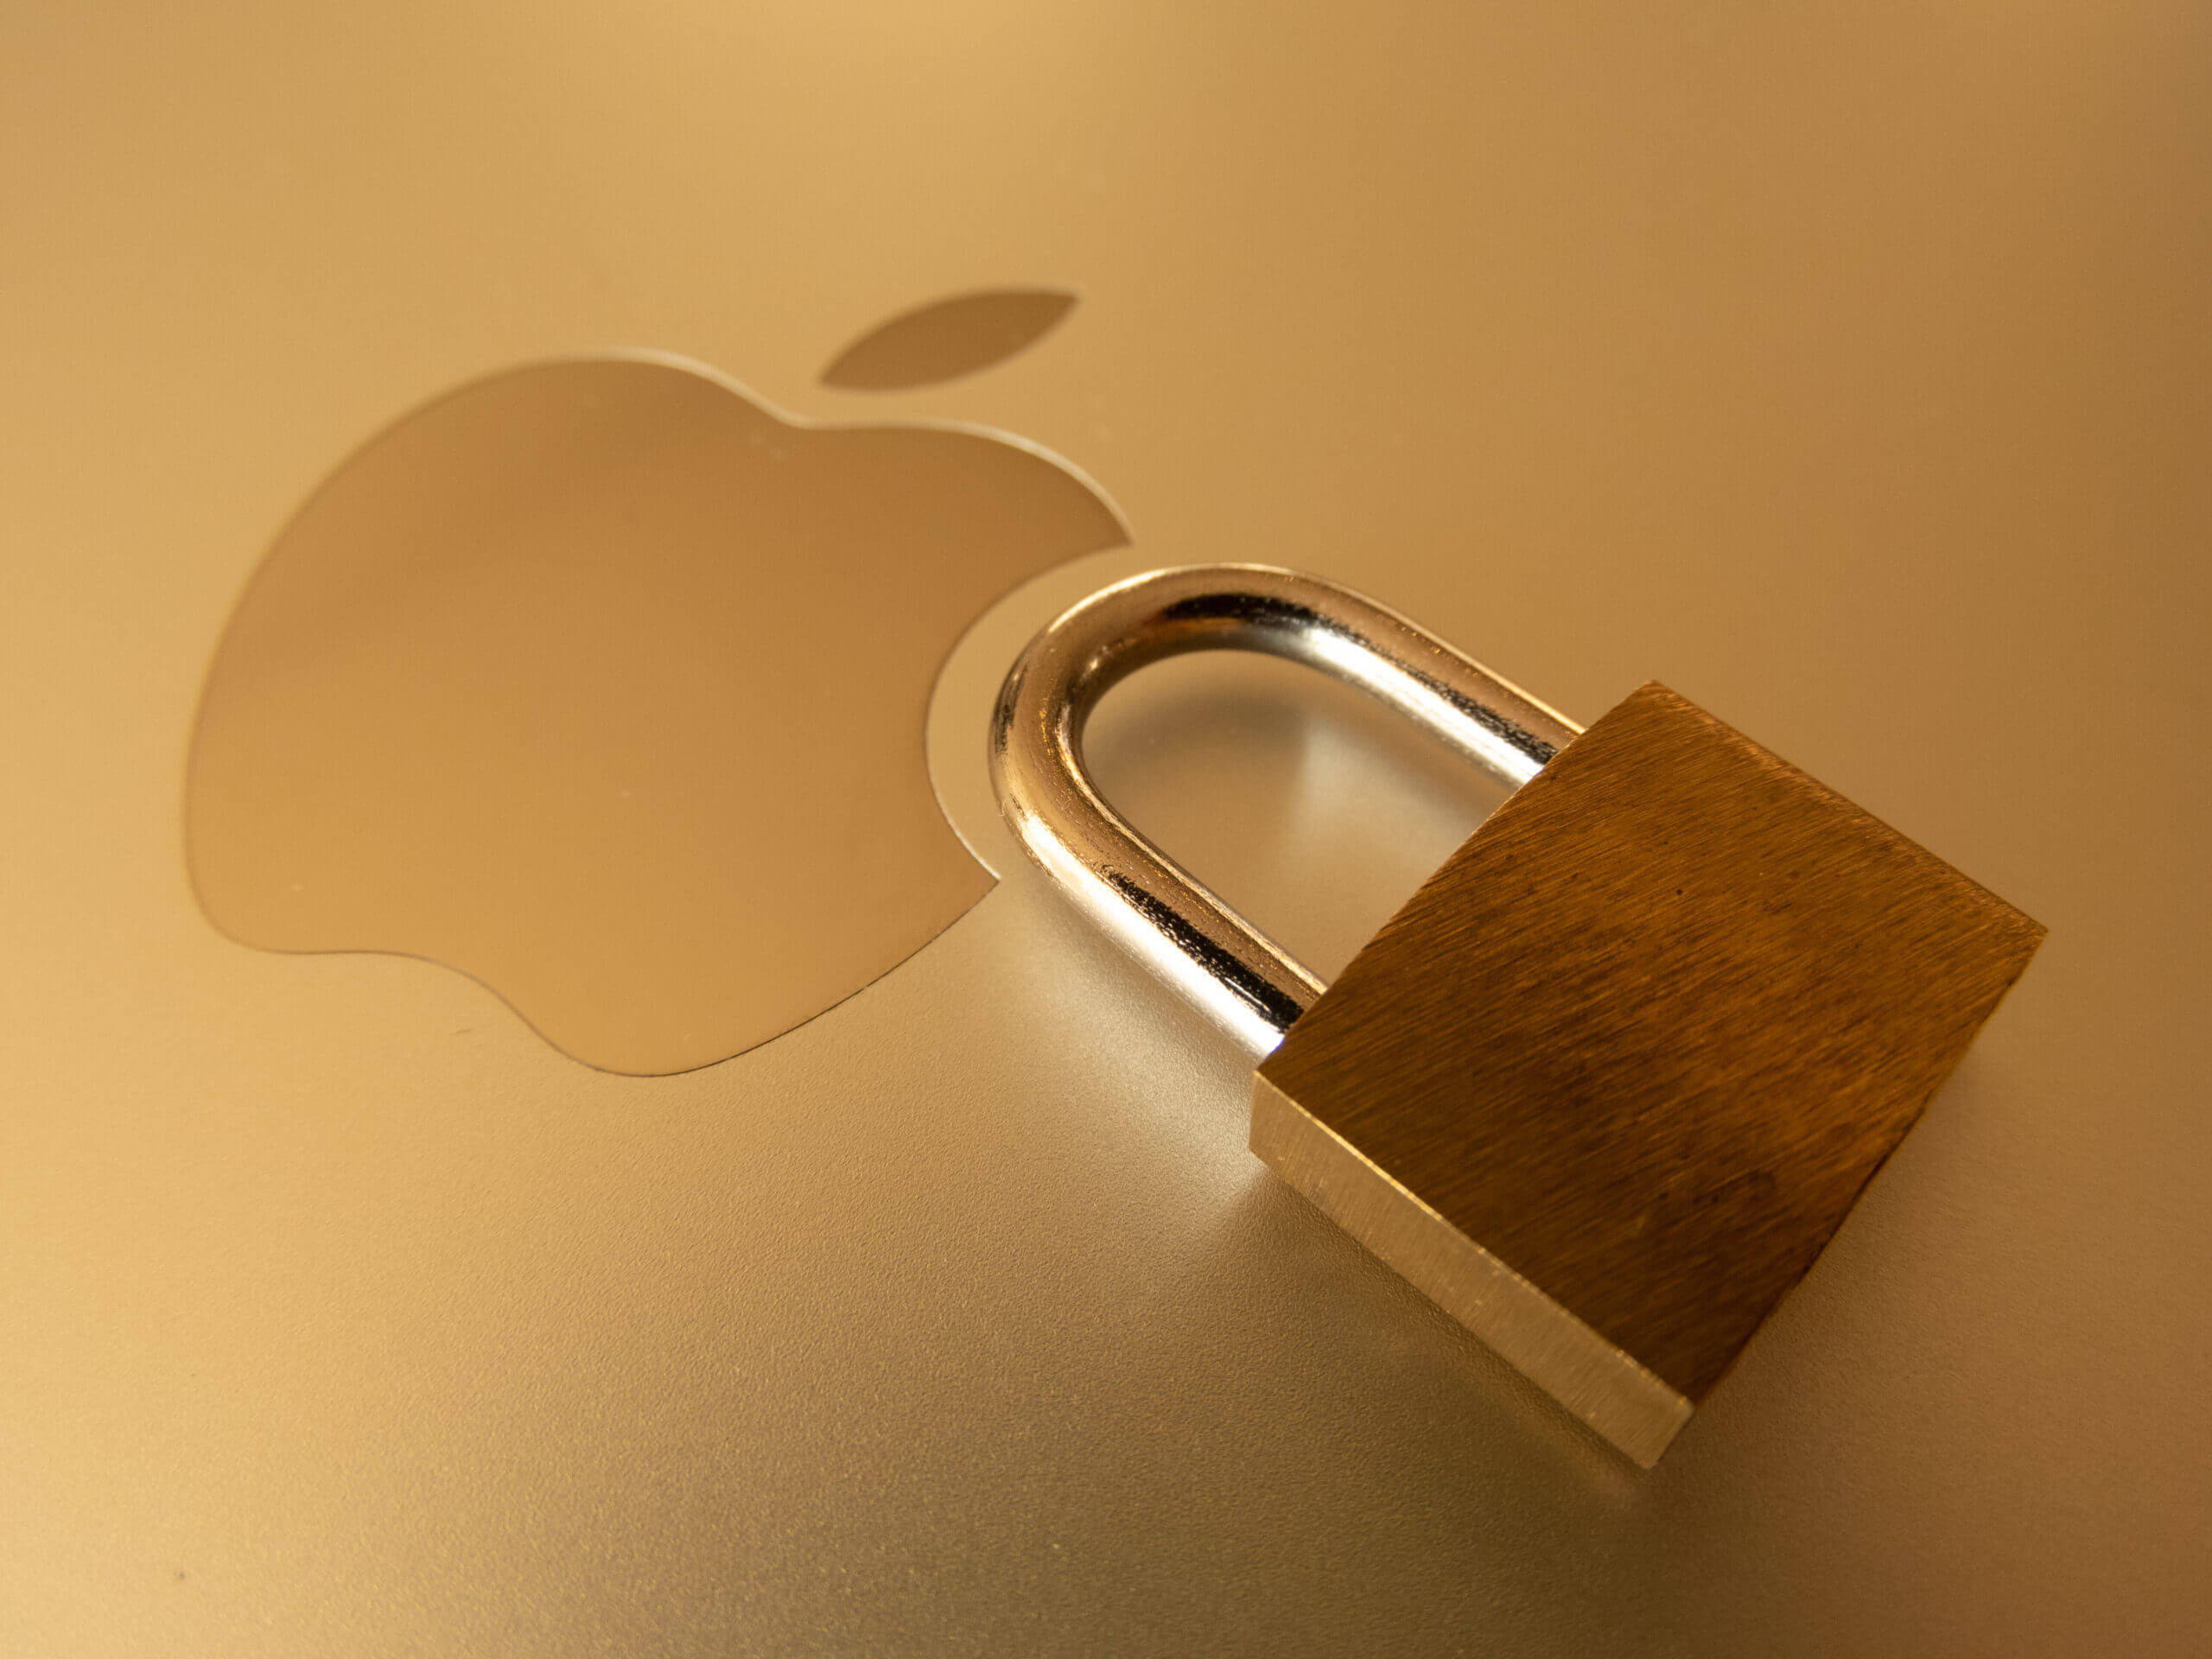 設定できてますか Macでフリーwifiを接続するときのセキュリティ対策 ティースリー株式会社